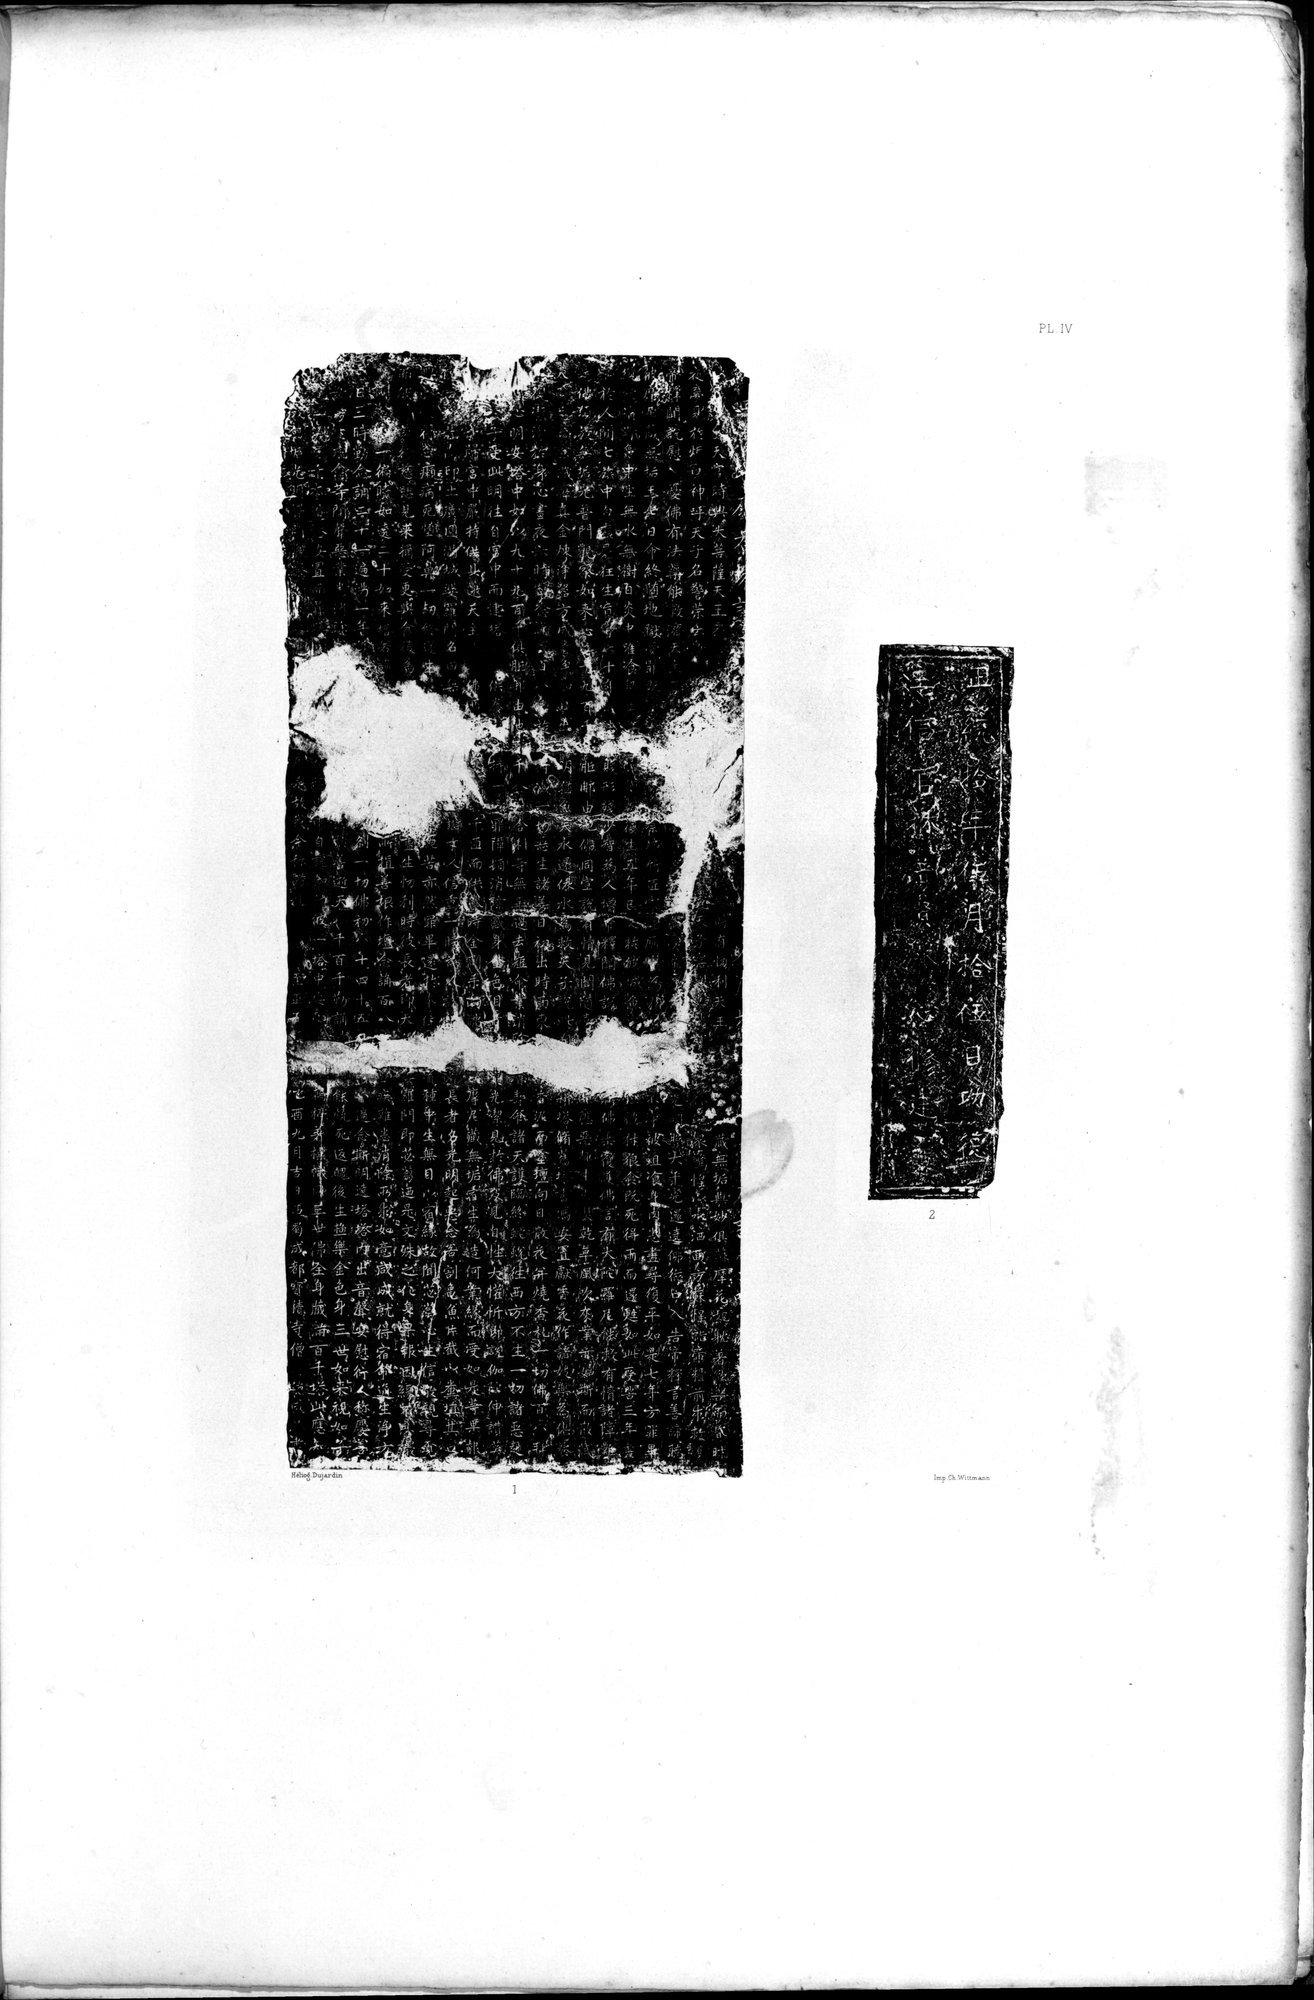 Documente de l'Époque Mongole des XIIIe et XIVe Siècle : vol.1 / Page 25 (Grayscale High Resolution Image)